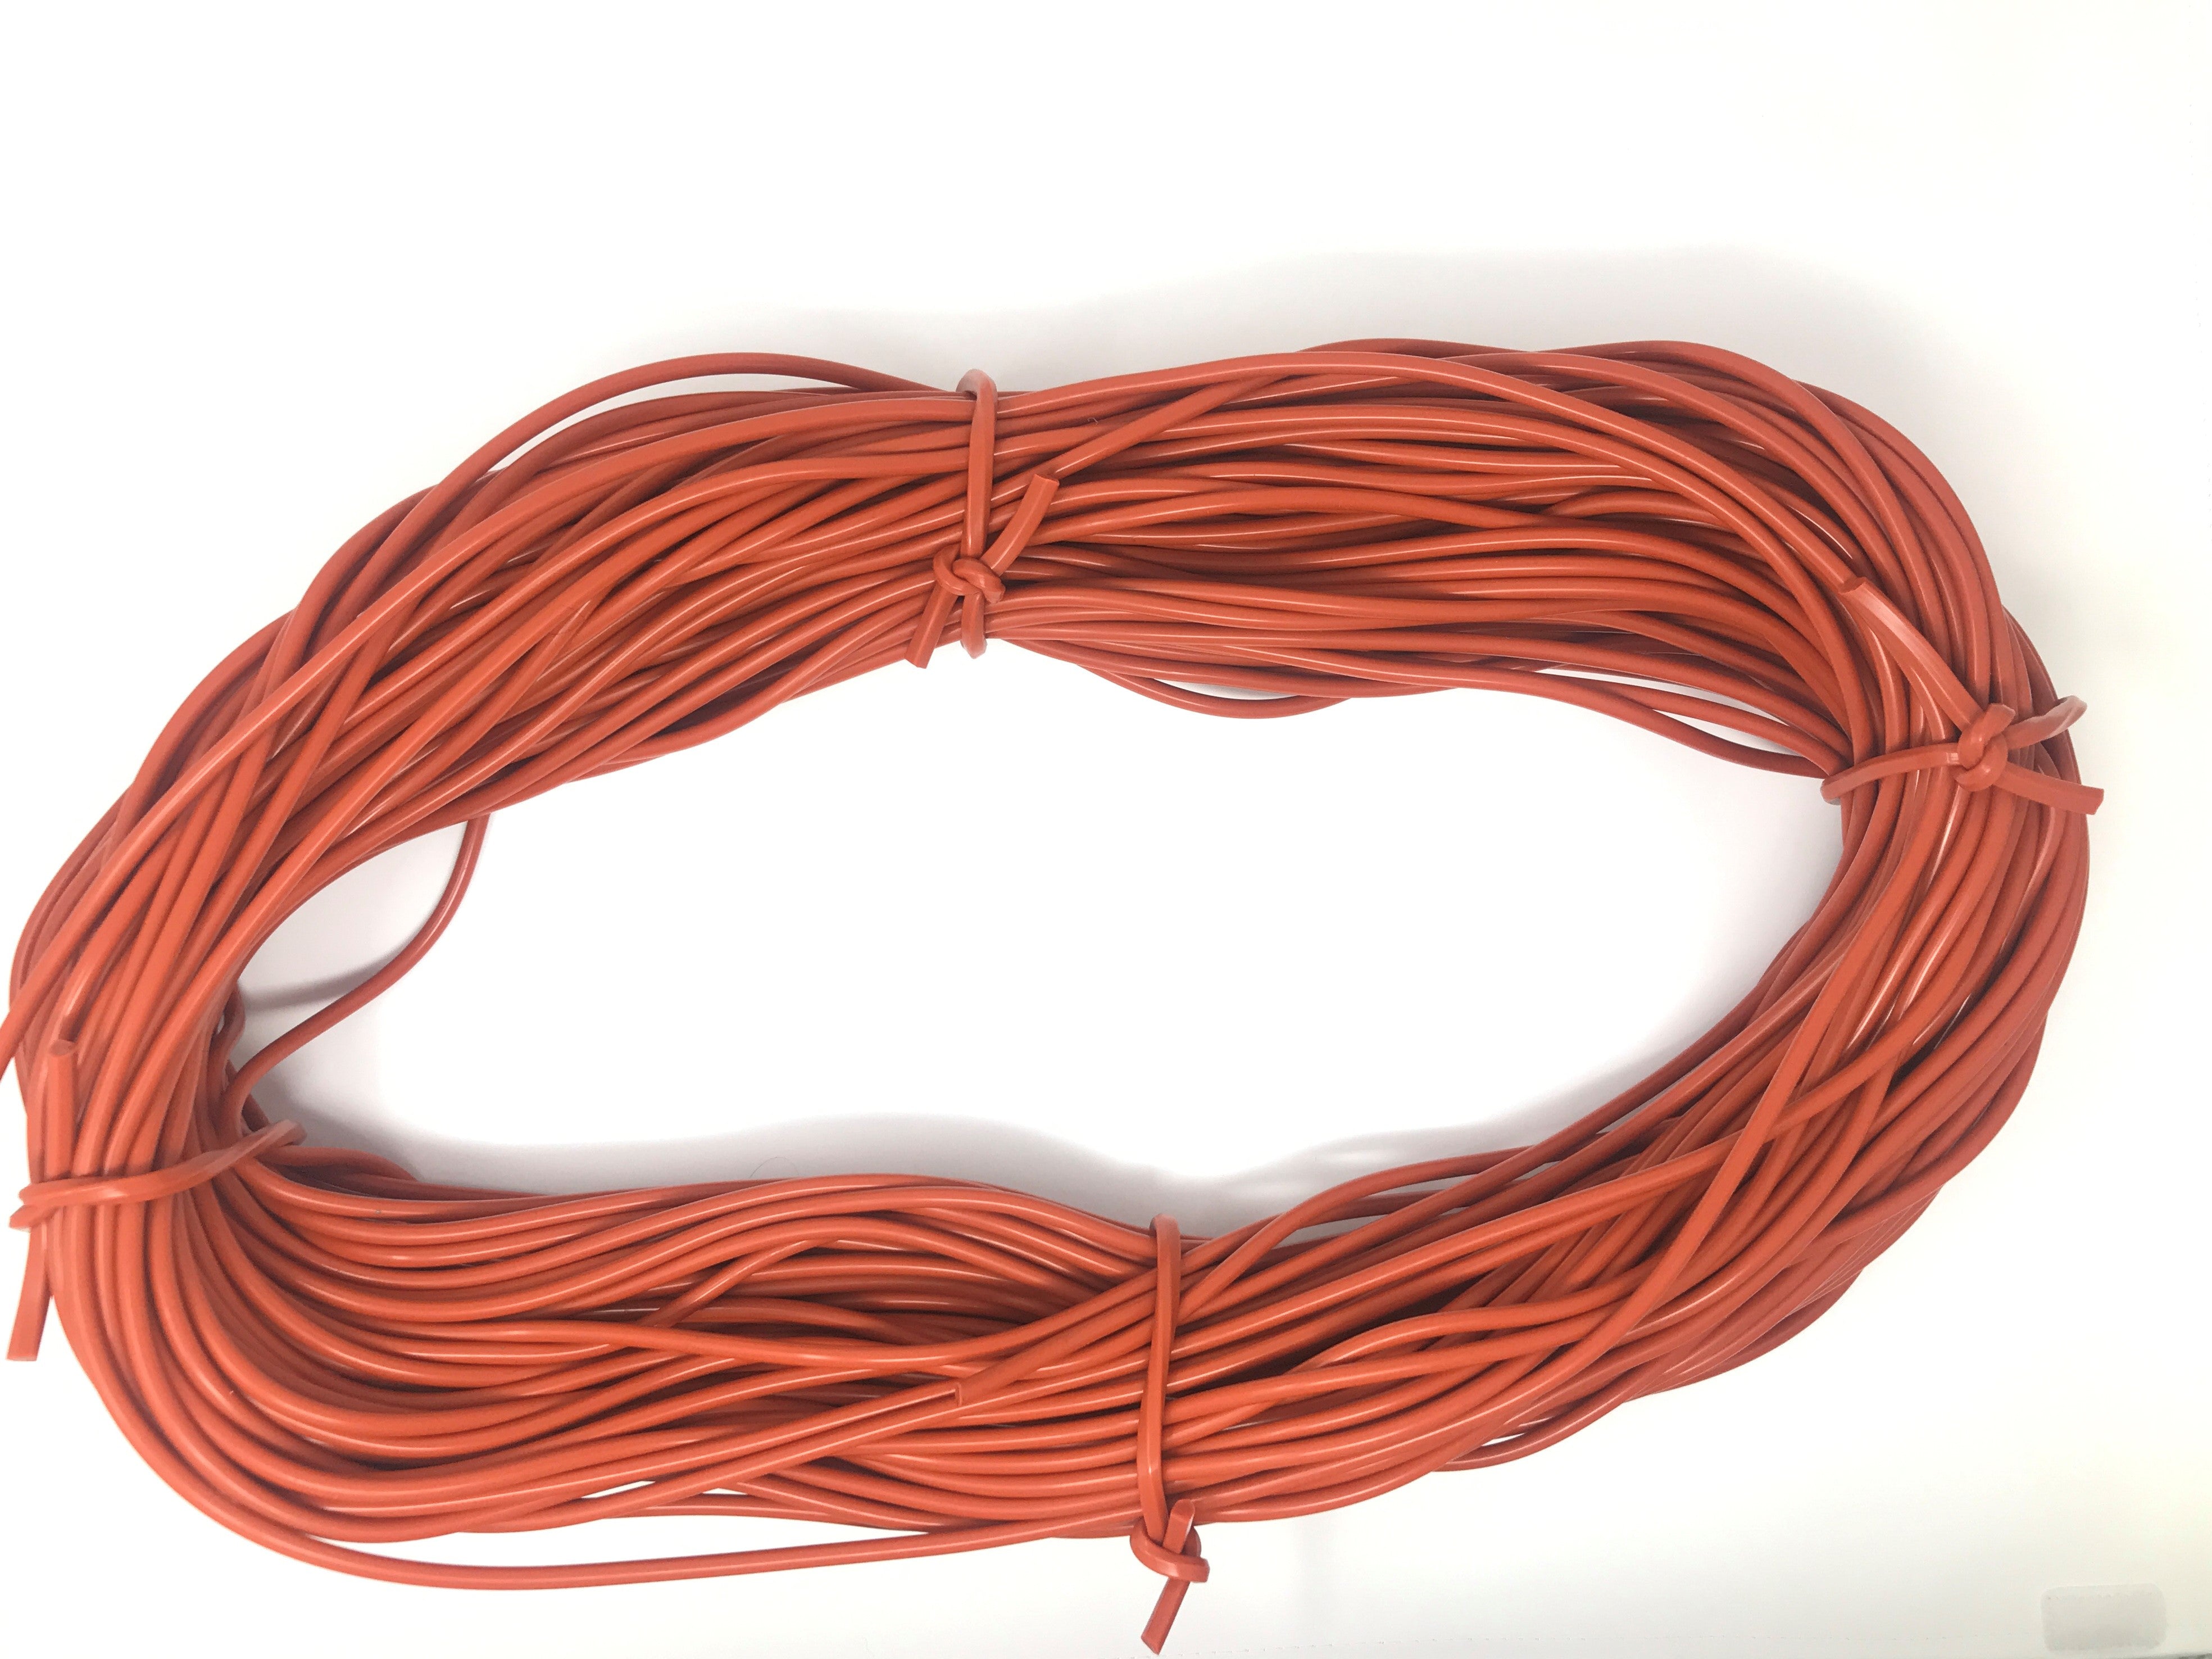 Silicone rubber cord